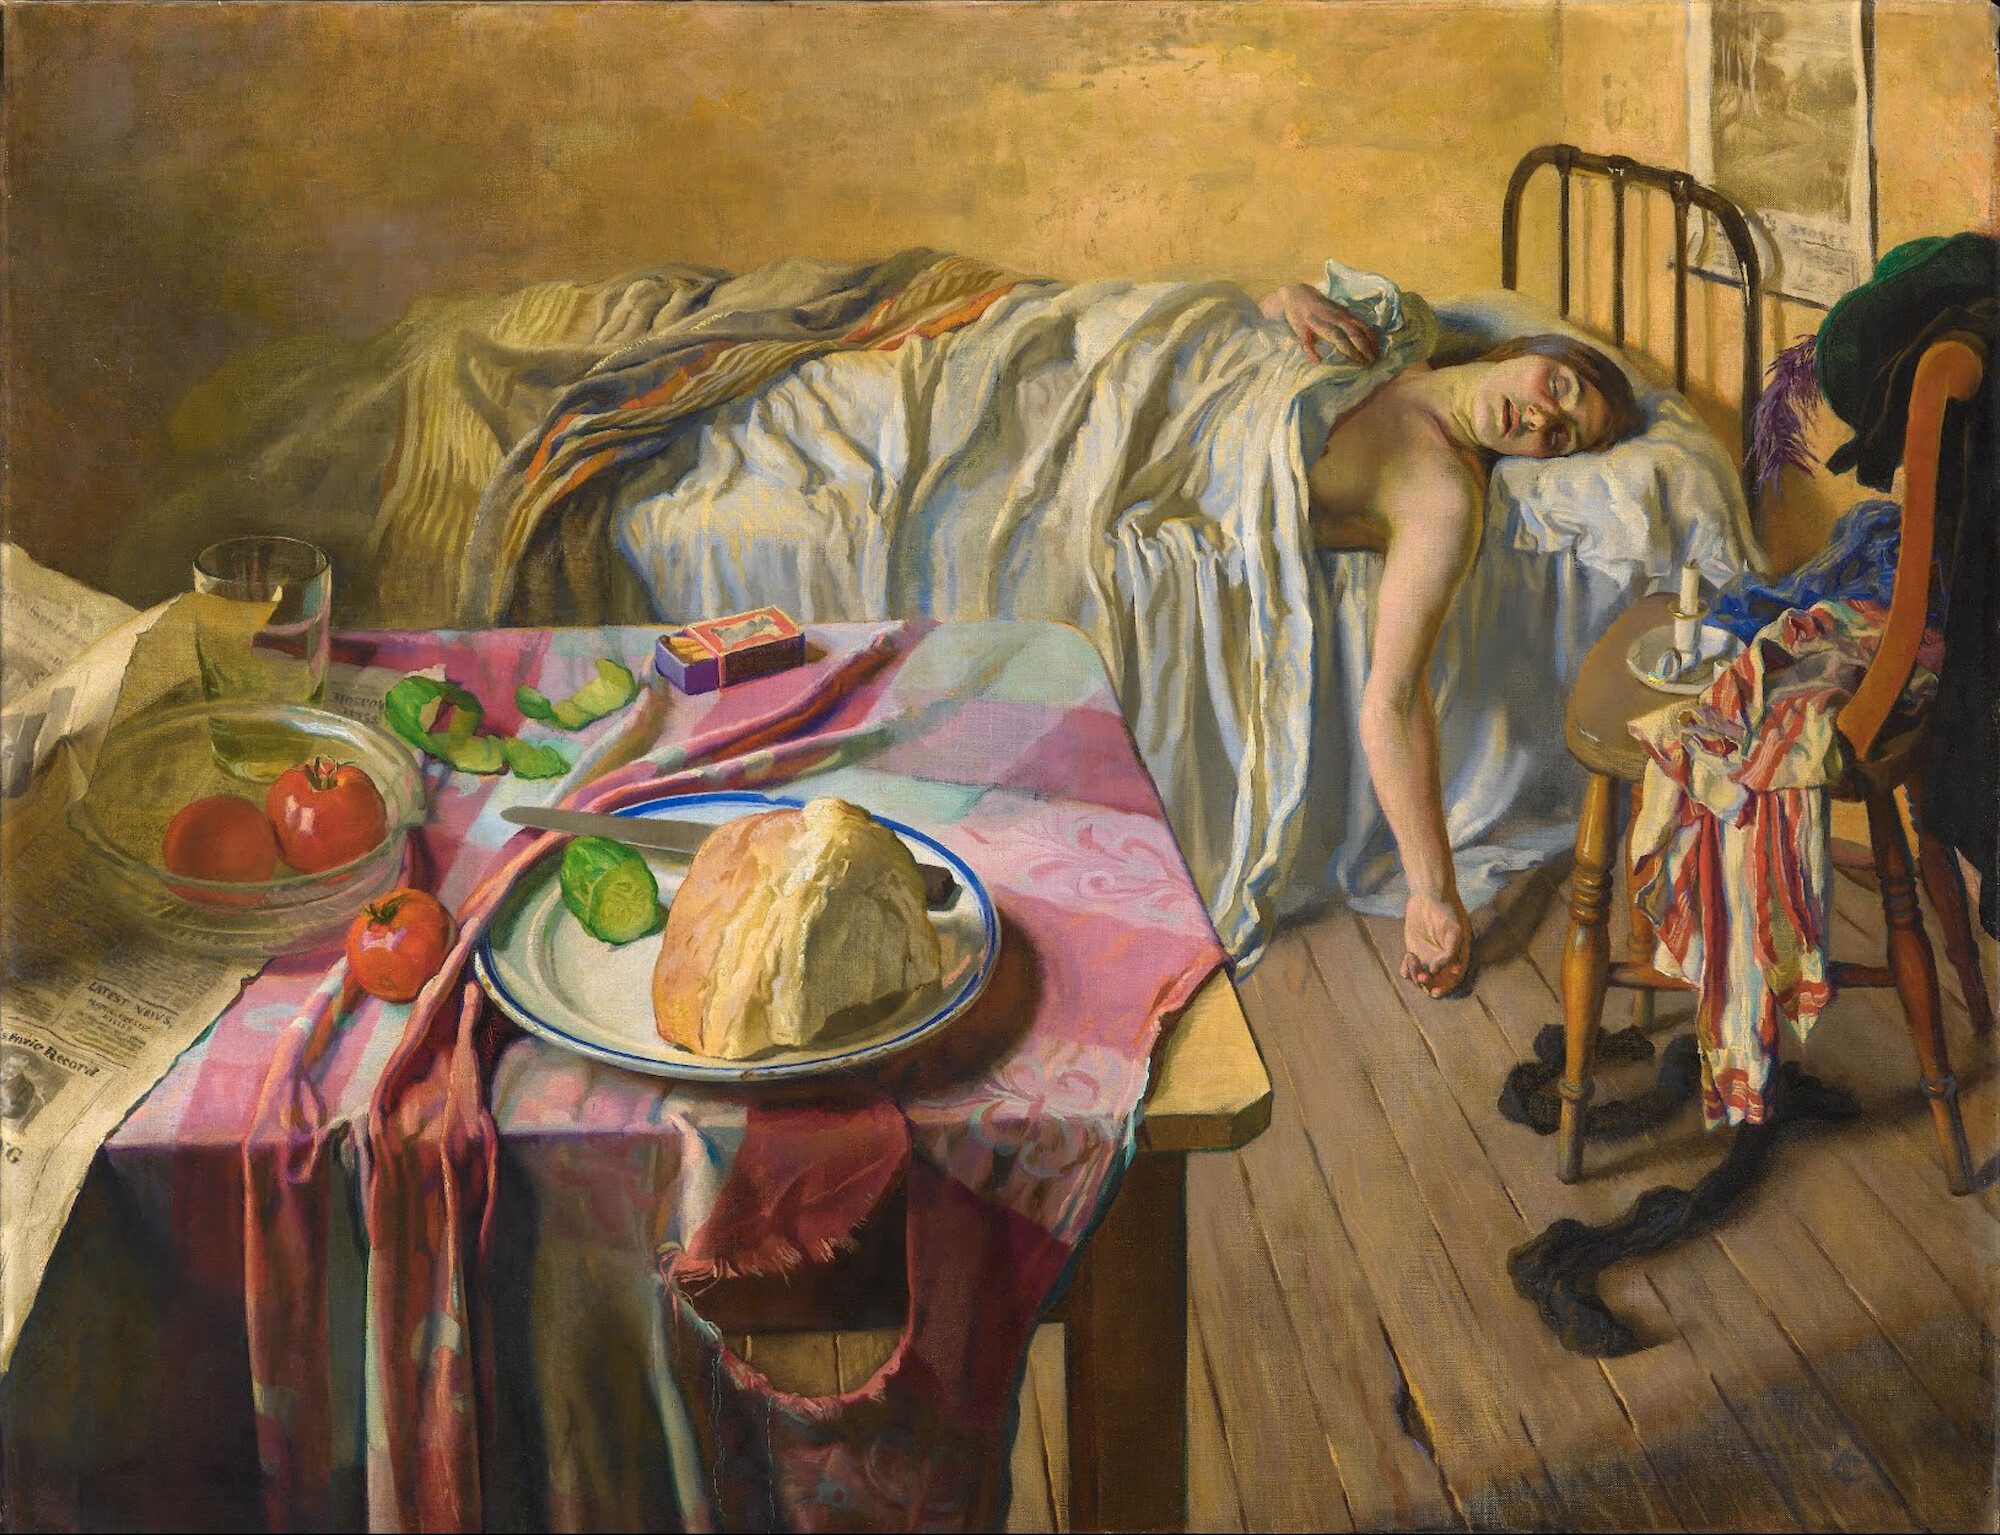 清晨 by 伊莎贝尔 科德灵顿 - 1934年 - 87 x 112.5 厘米 